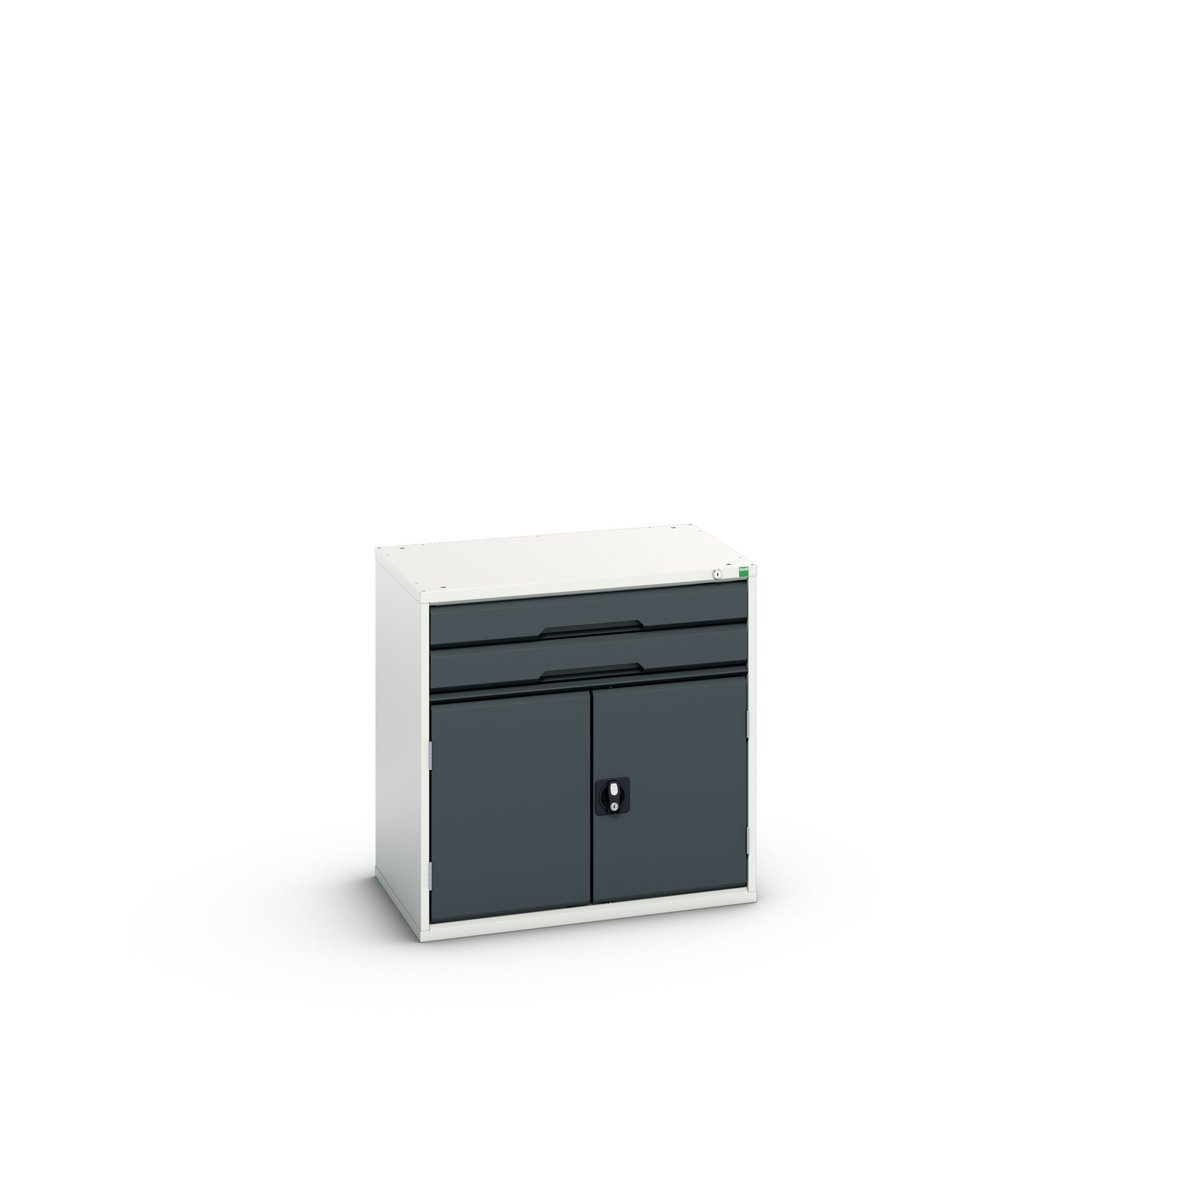 16925416. - verso drawer-door cabinet